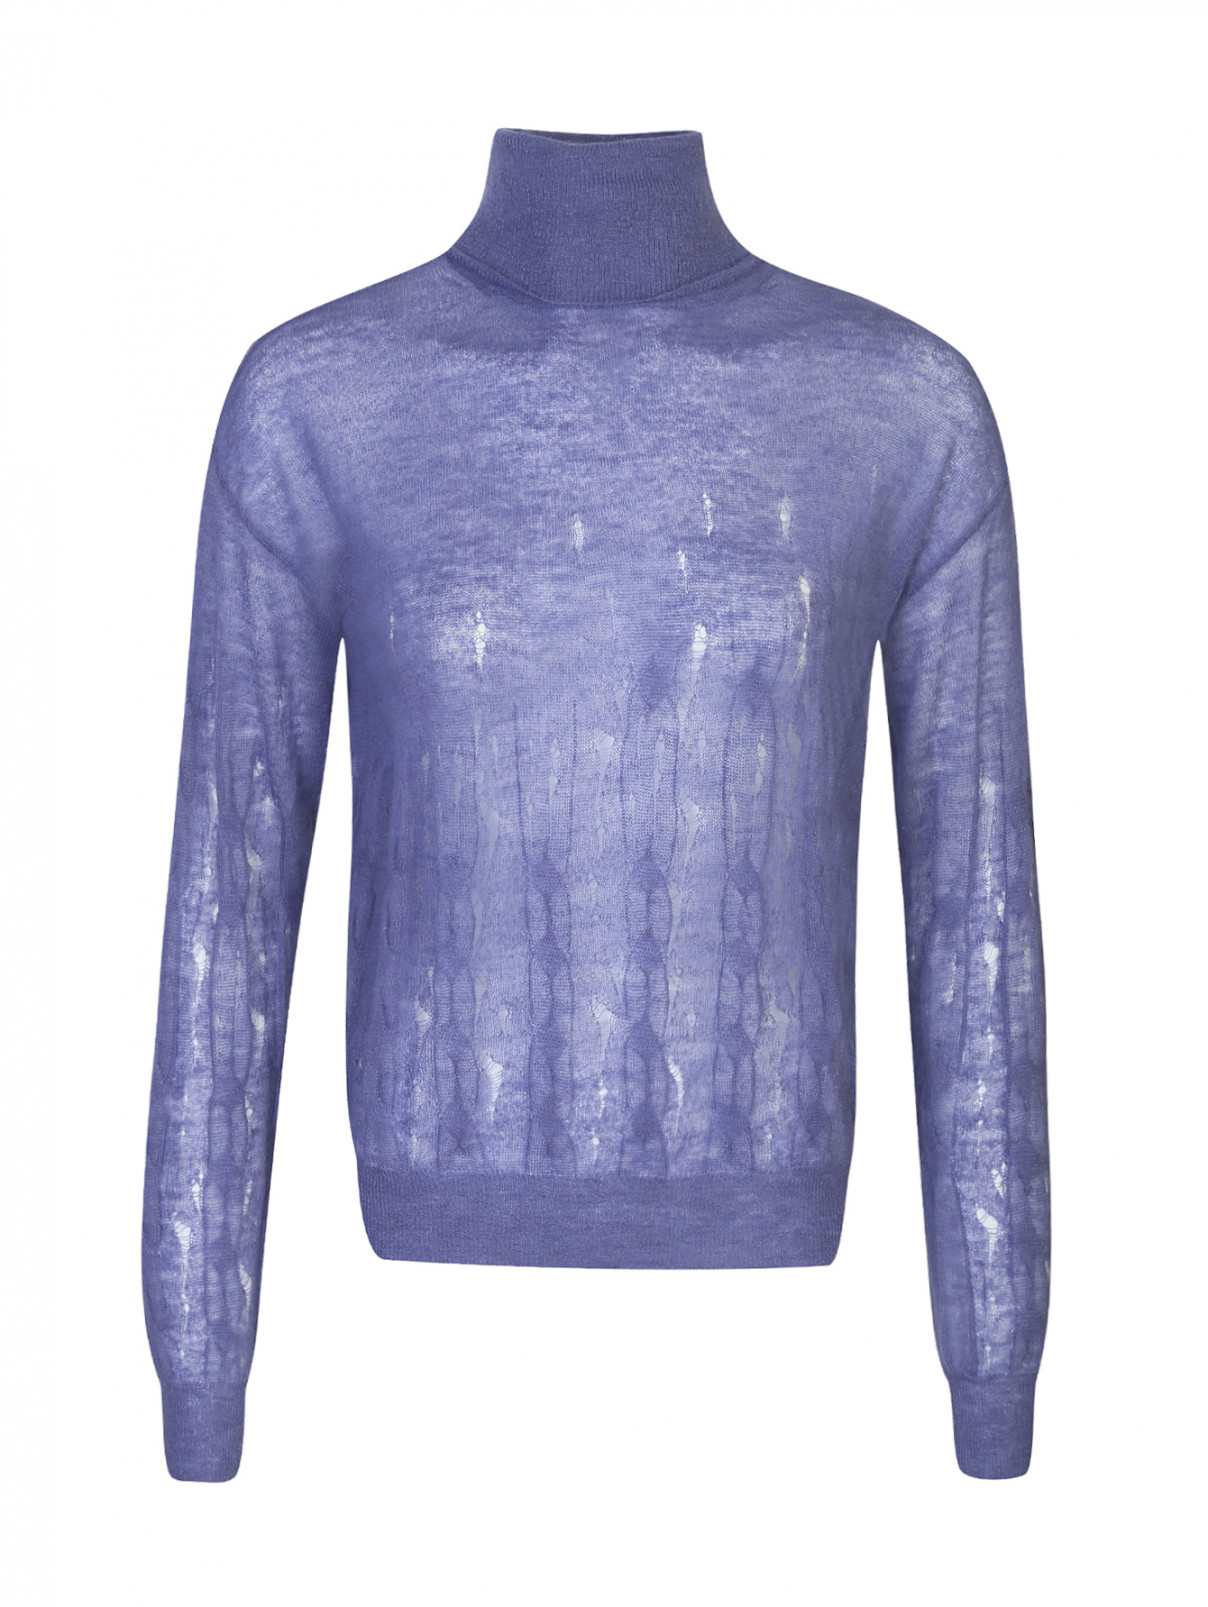 Свитер из шерсти и мохера Nina Ricci  –  Общий вид  – Цвет:  Фиолетовый